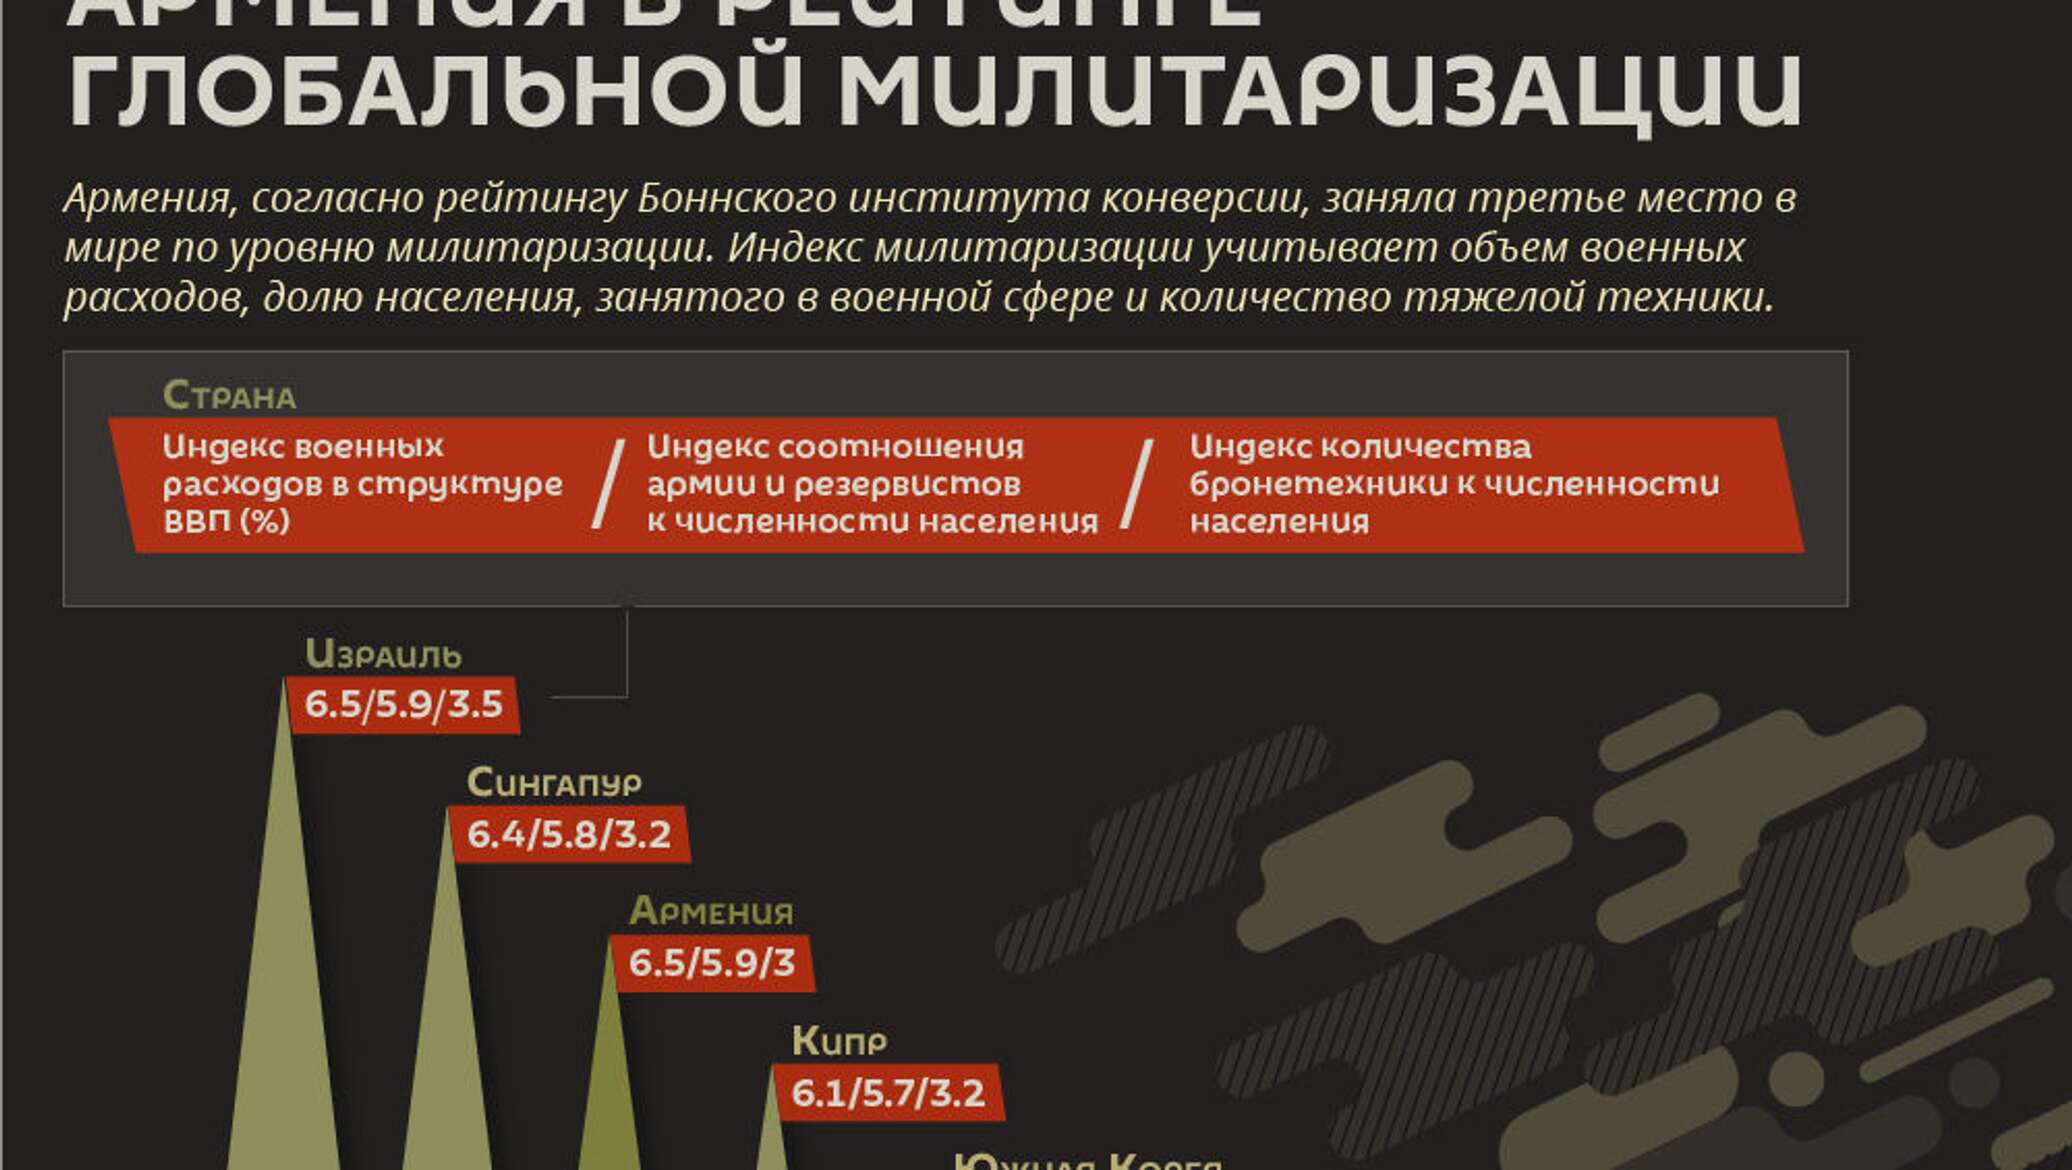 Дугин тотальная милитаризация. Милитаризация страны. Армения инфографика. Экономика Армении инфографика. Военная безопасность инфографика 2020.